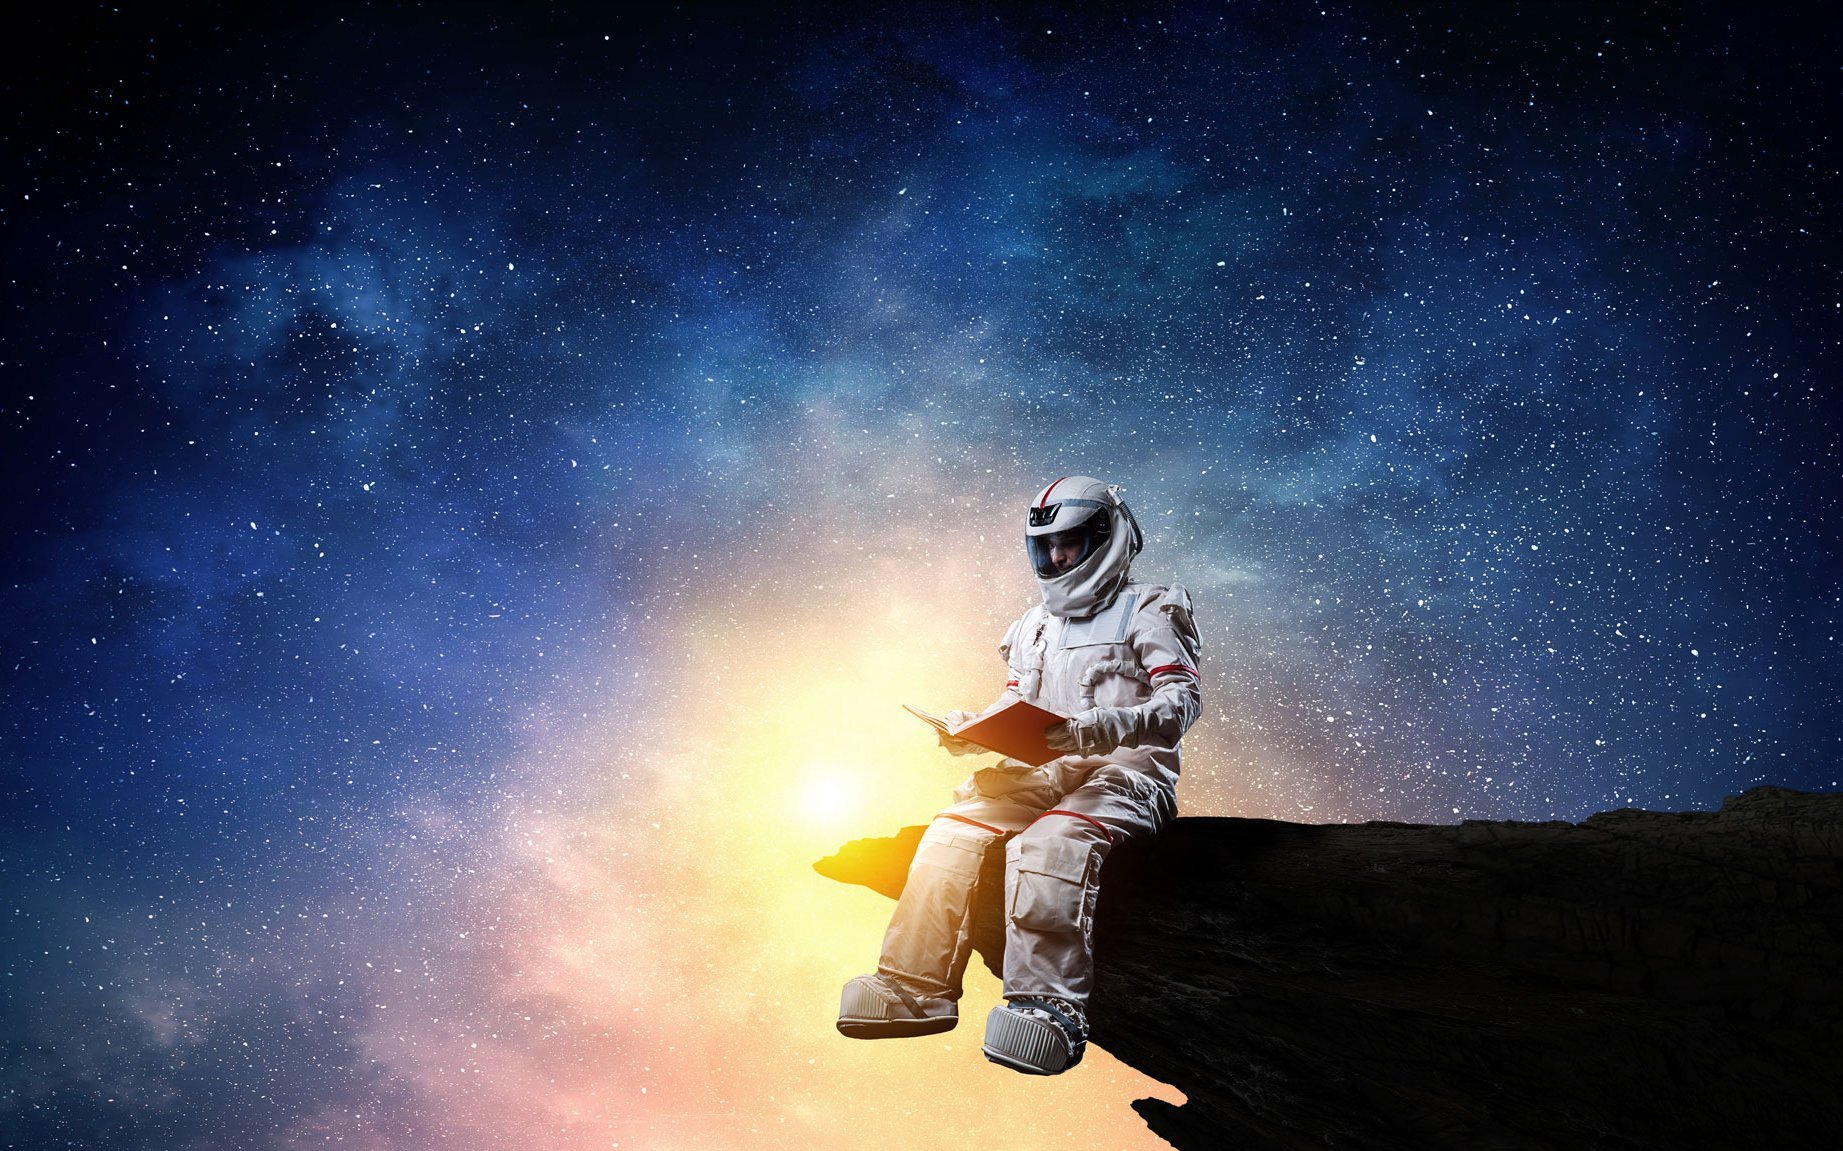 Auf einem Felsvorsprung sitzt ein Astronaut, der ein Buch in der Hand hält. Im Hintergrund ist ein Galaxie in schillernden Farben abgebildet.